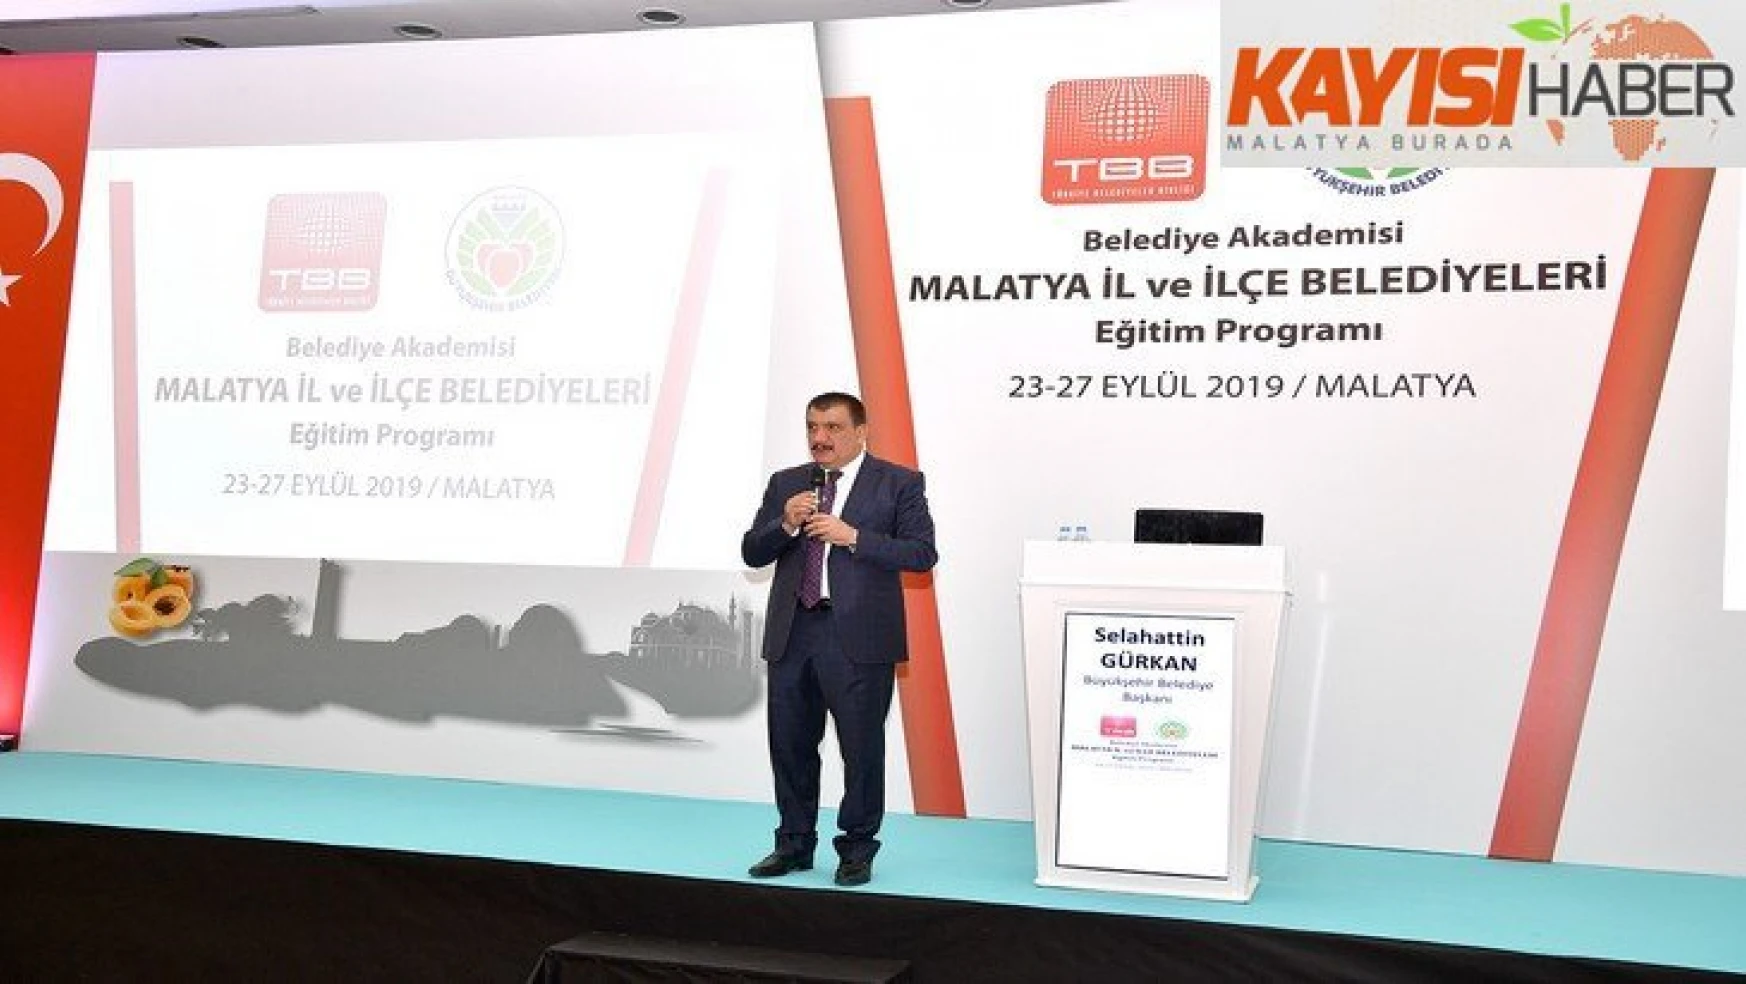 Malatya Büyükşehir Belediyesi'nde eğitim semineri yapıldı